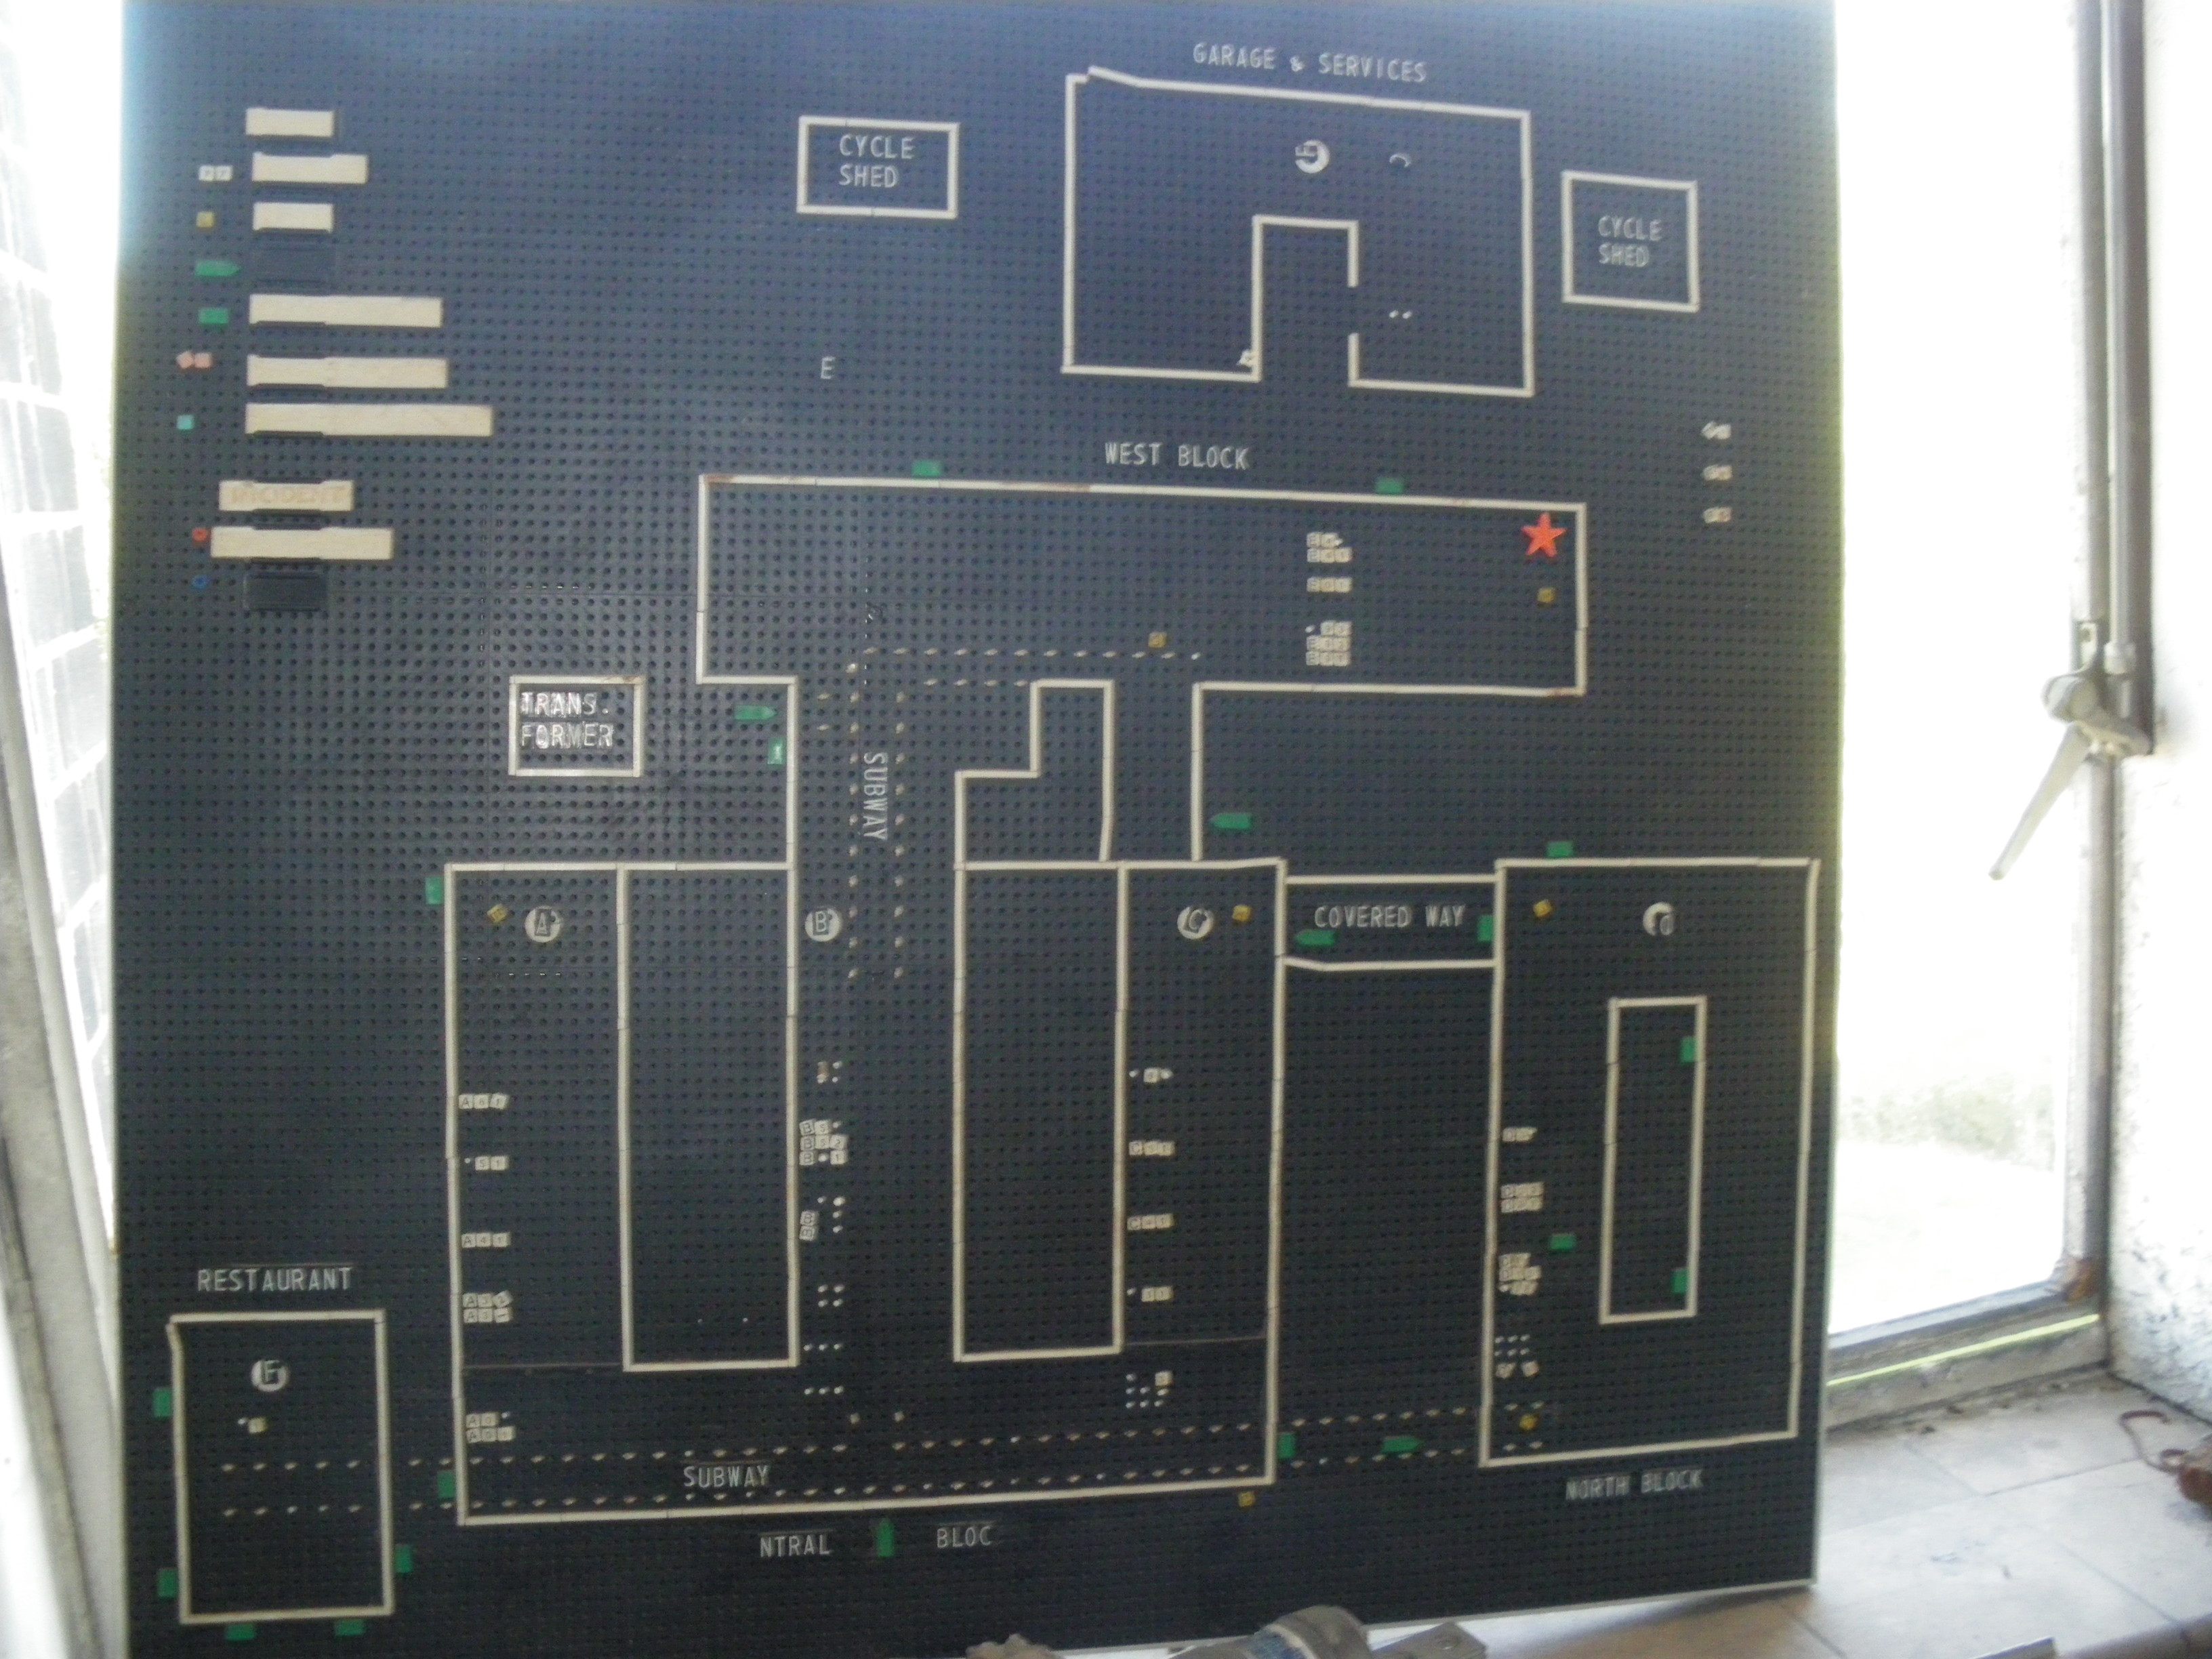 W302 - pin board